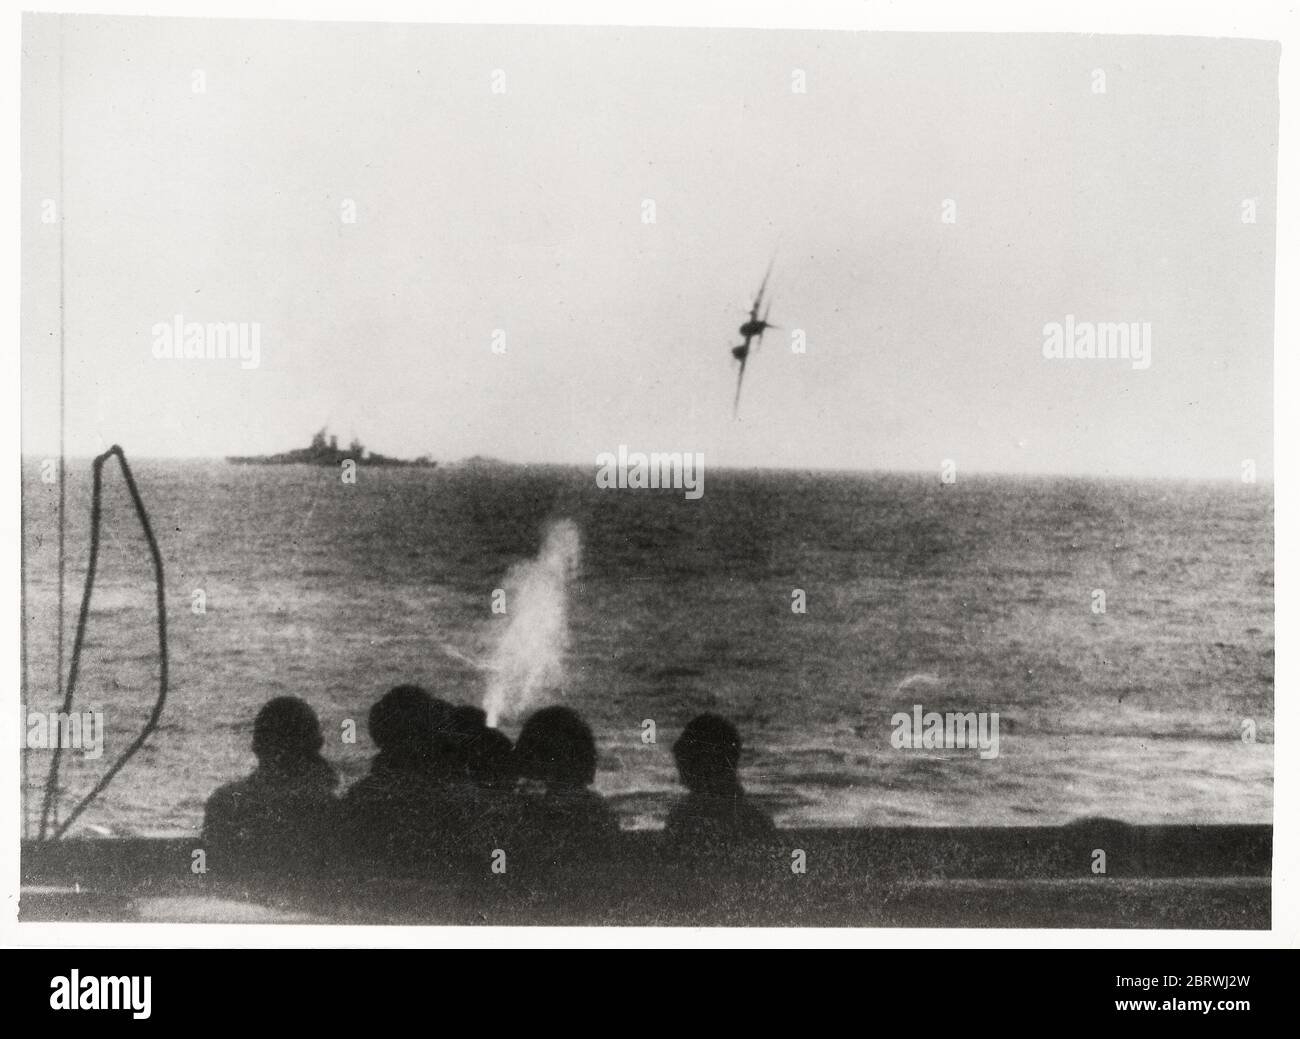 Vintage World war II Photograph - Japanischer Selbstmordkamikaze Angriff auf ein amerikanisches Schlachtschiff im Pazifik. Das Flugzeug wurde kurz vor dem Schiff abgesetzt. Stockfoto